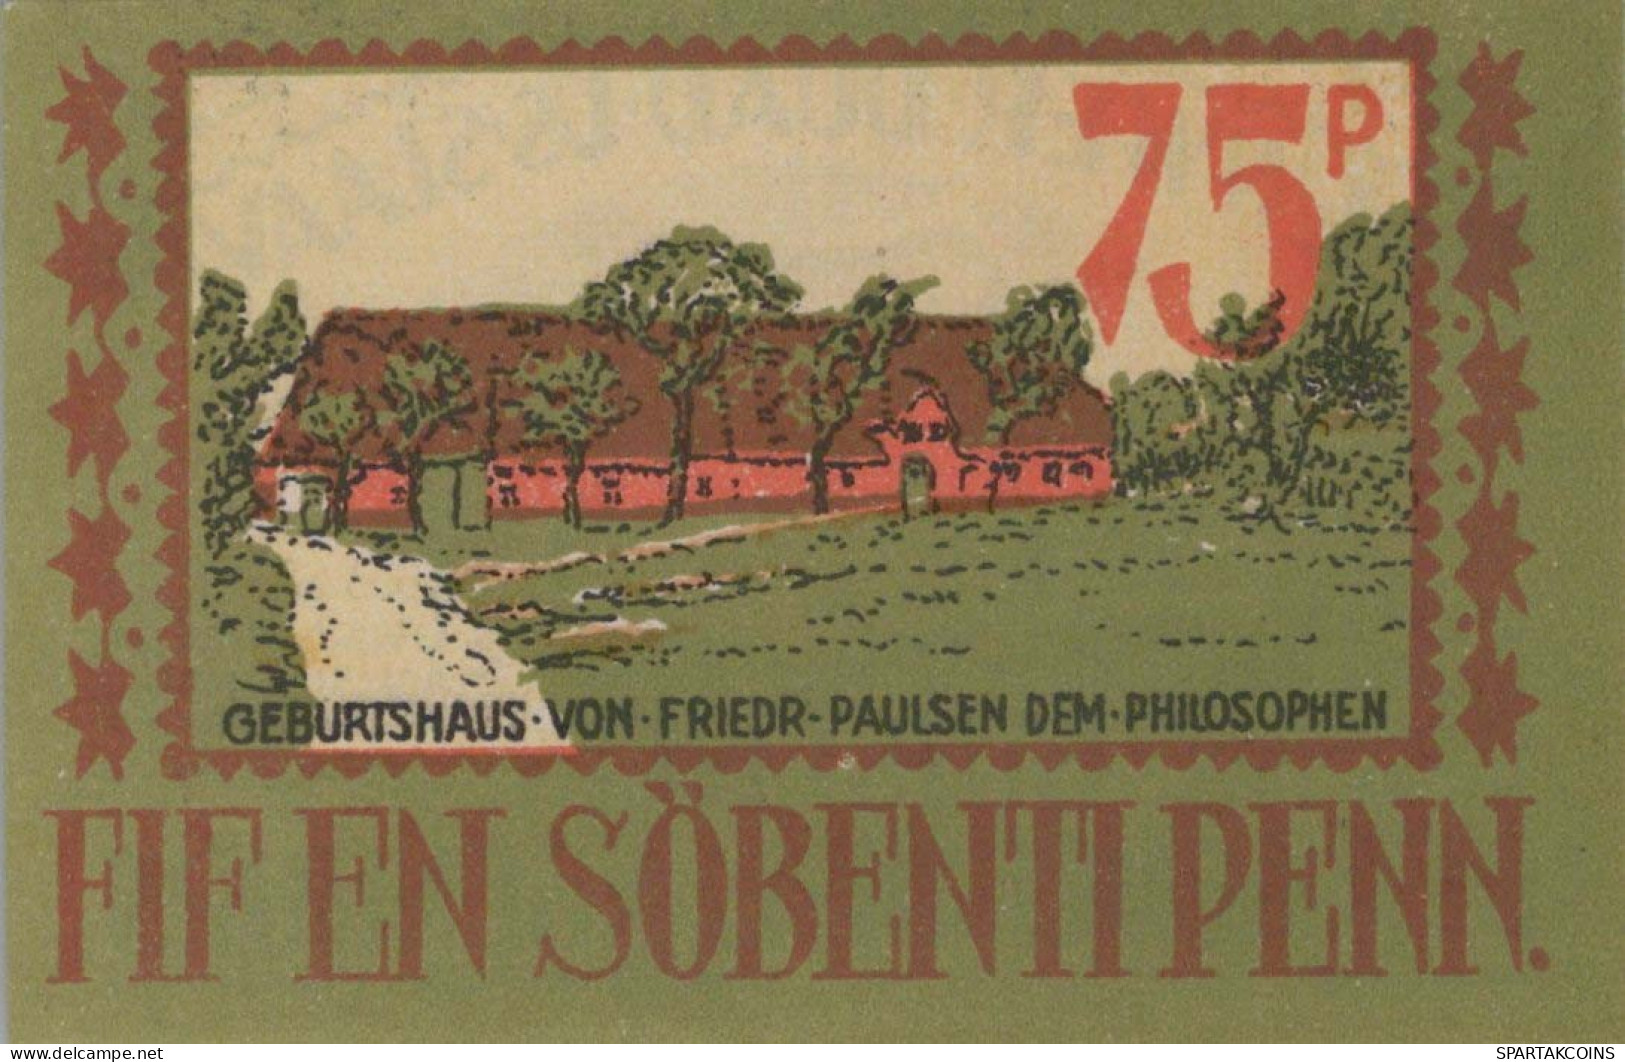 75 PFENNIG 1921 Stadt LANGENHORN IN NORDFRIESLAND DEUTSCHLAND #PF397 - [11] Local Banknote Issues